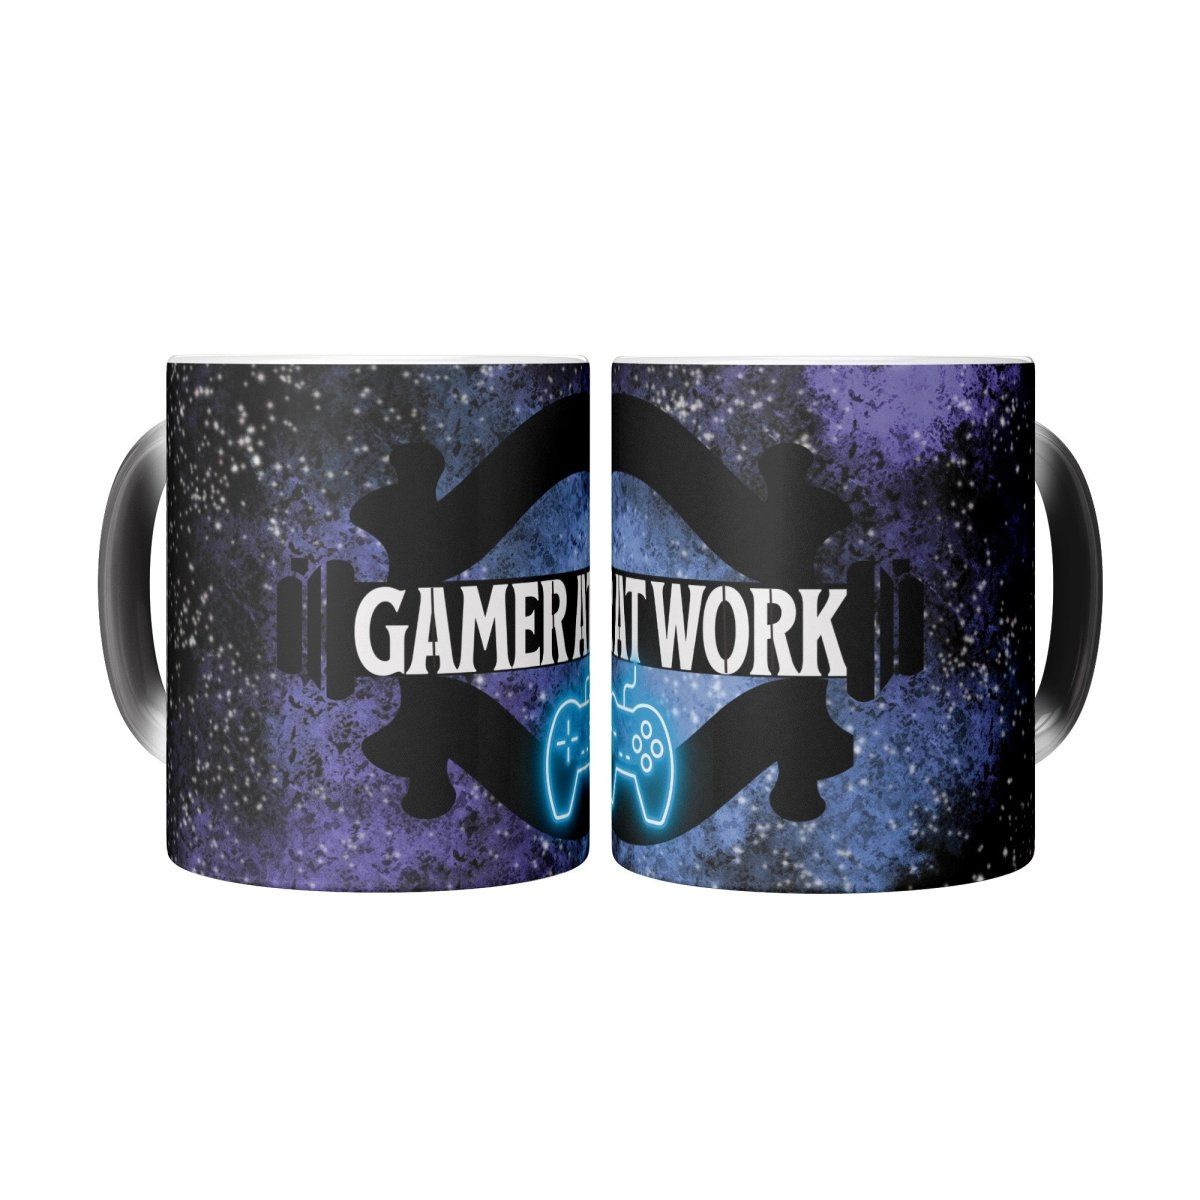 Gamers Perfect Gift Work Mug - Iron Phoenix GHG